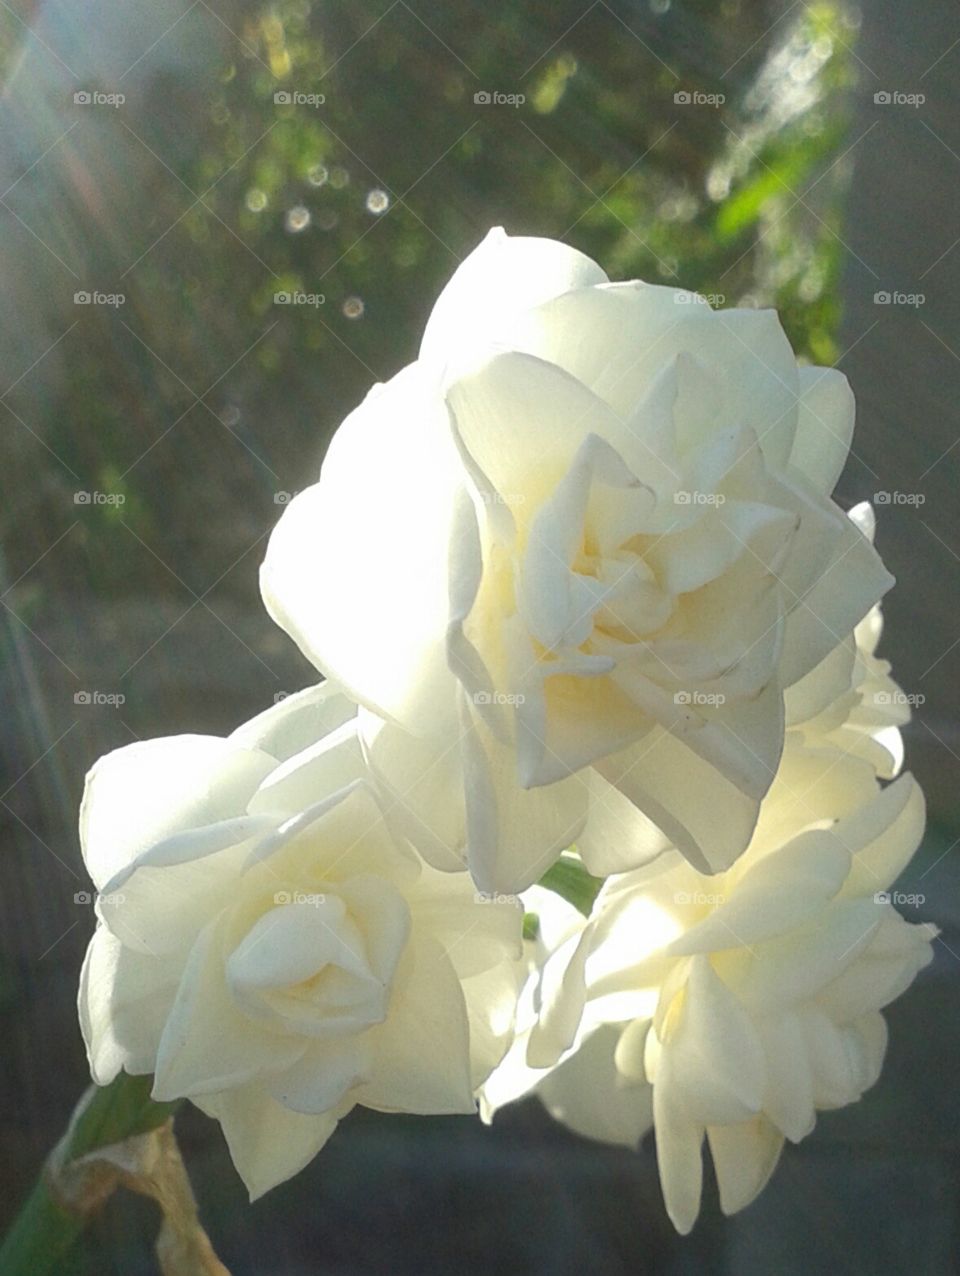 rays of beautiful sunshine lighting up these white beauties.